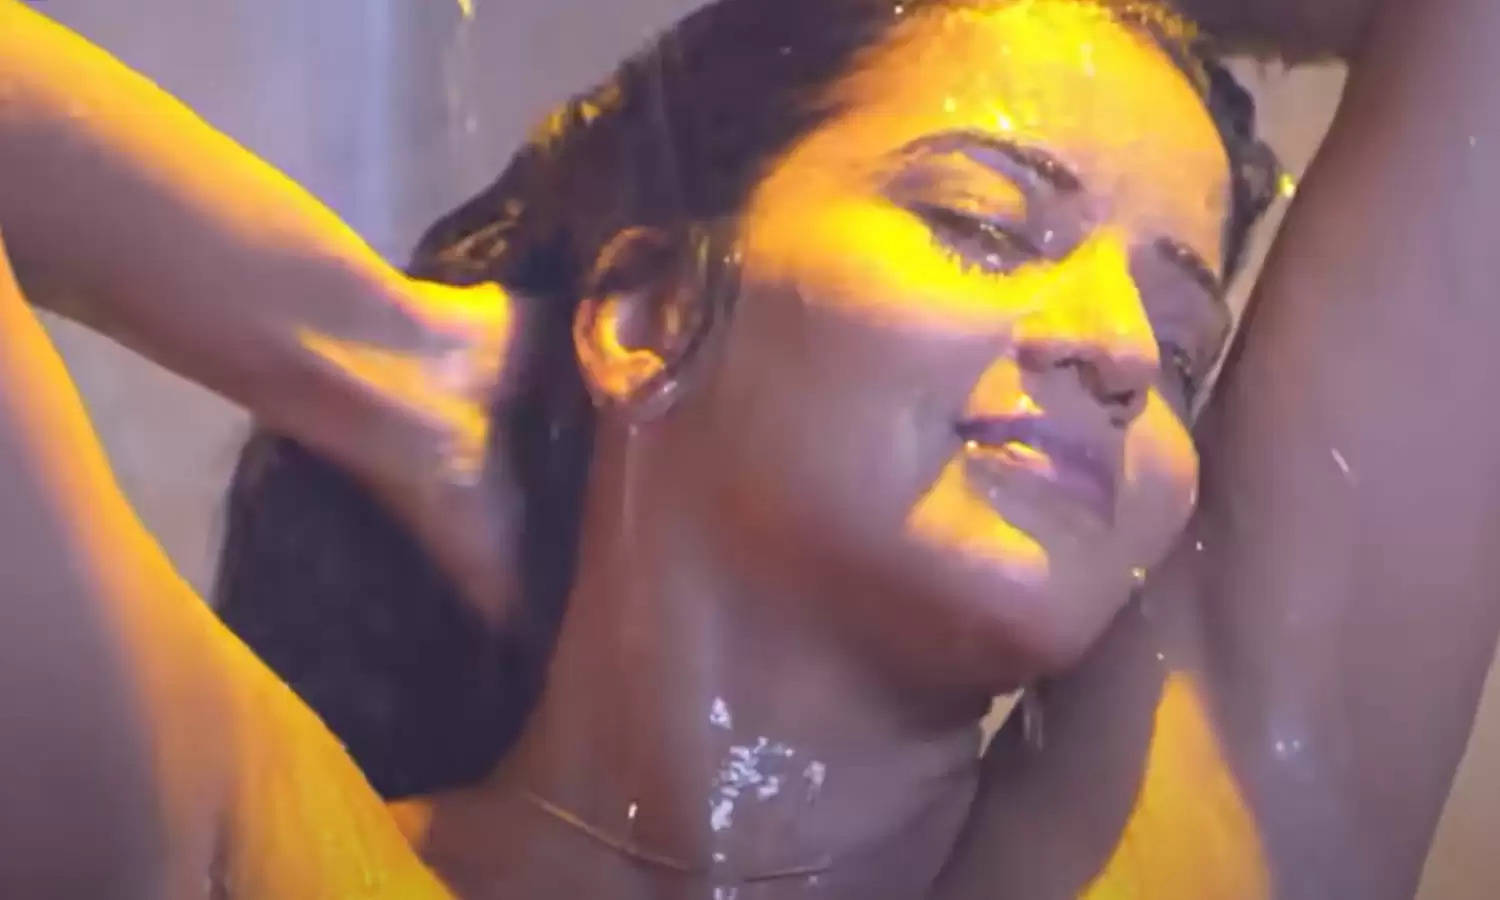 Monalisa Bathroom Video Leak : Bathroom में Monalisa का नहाते हुए वीडियो हुआ लीक, अकेले में ही देखें ये वीडियो